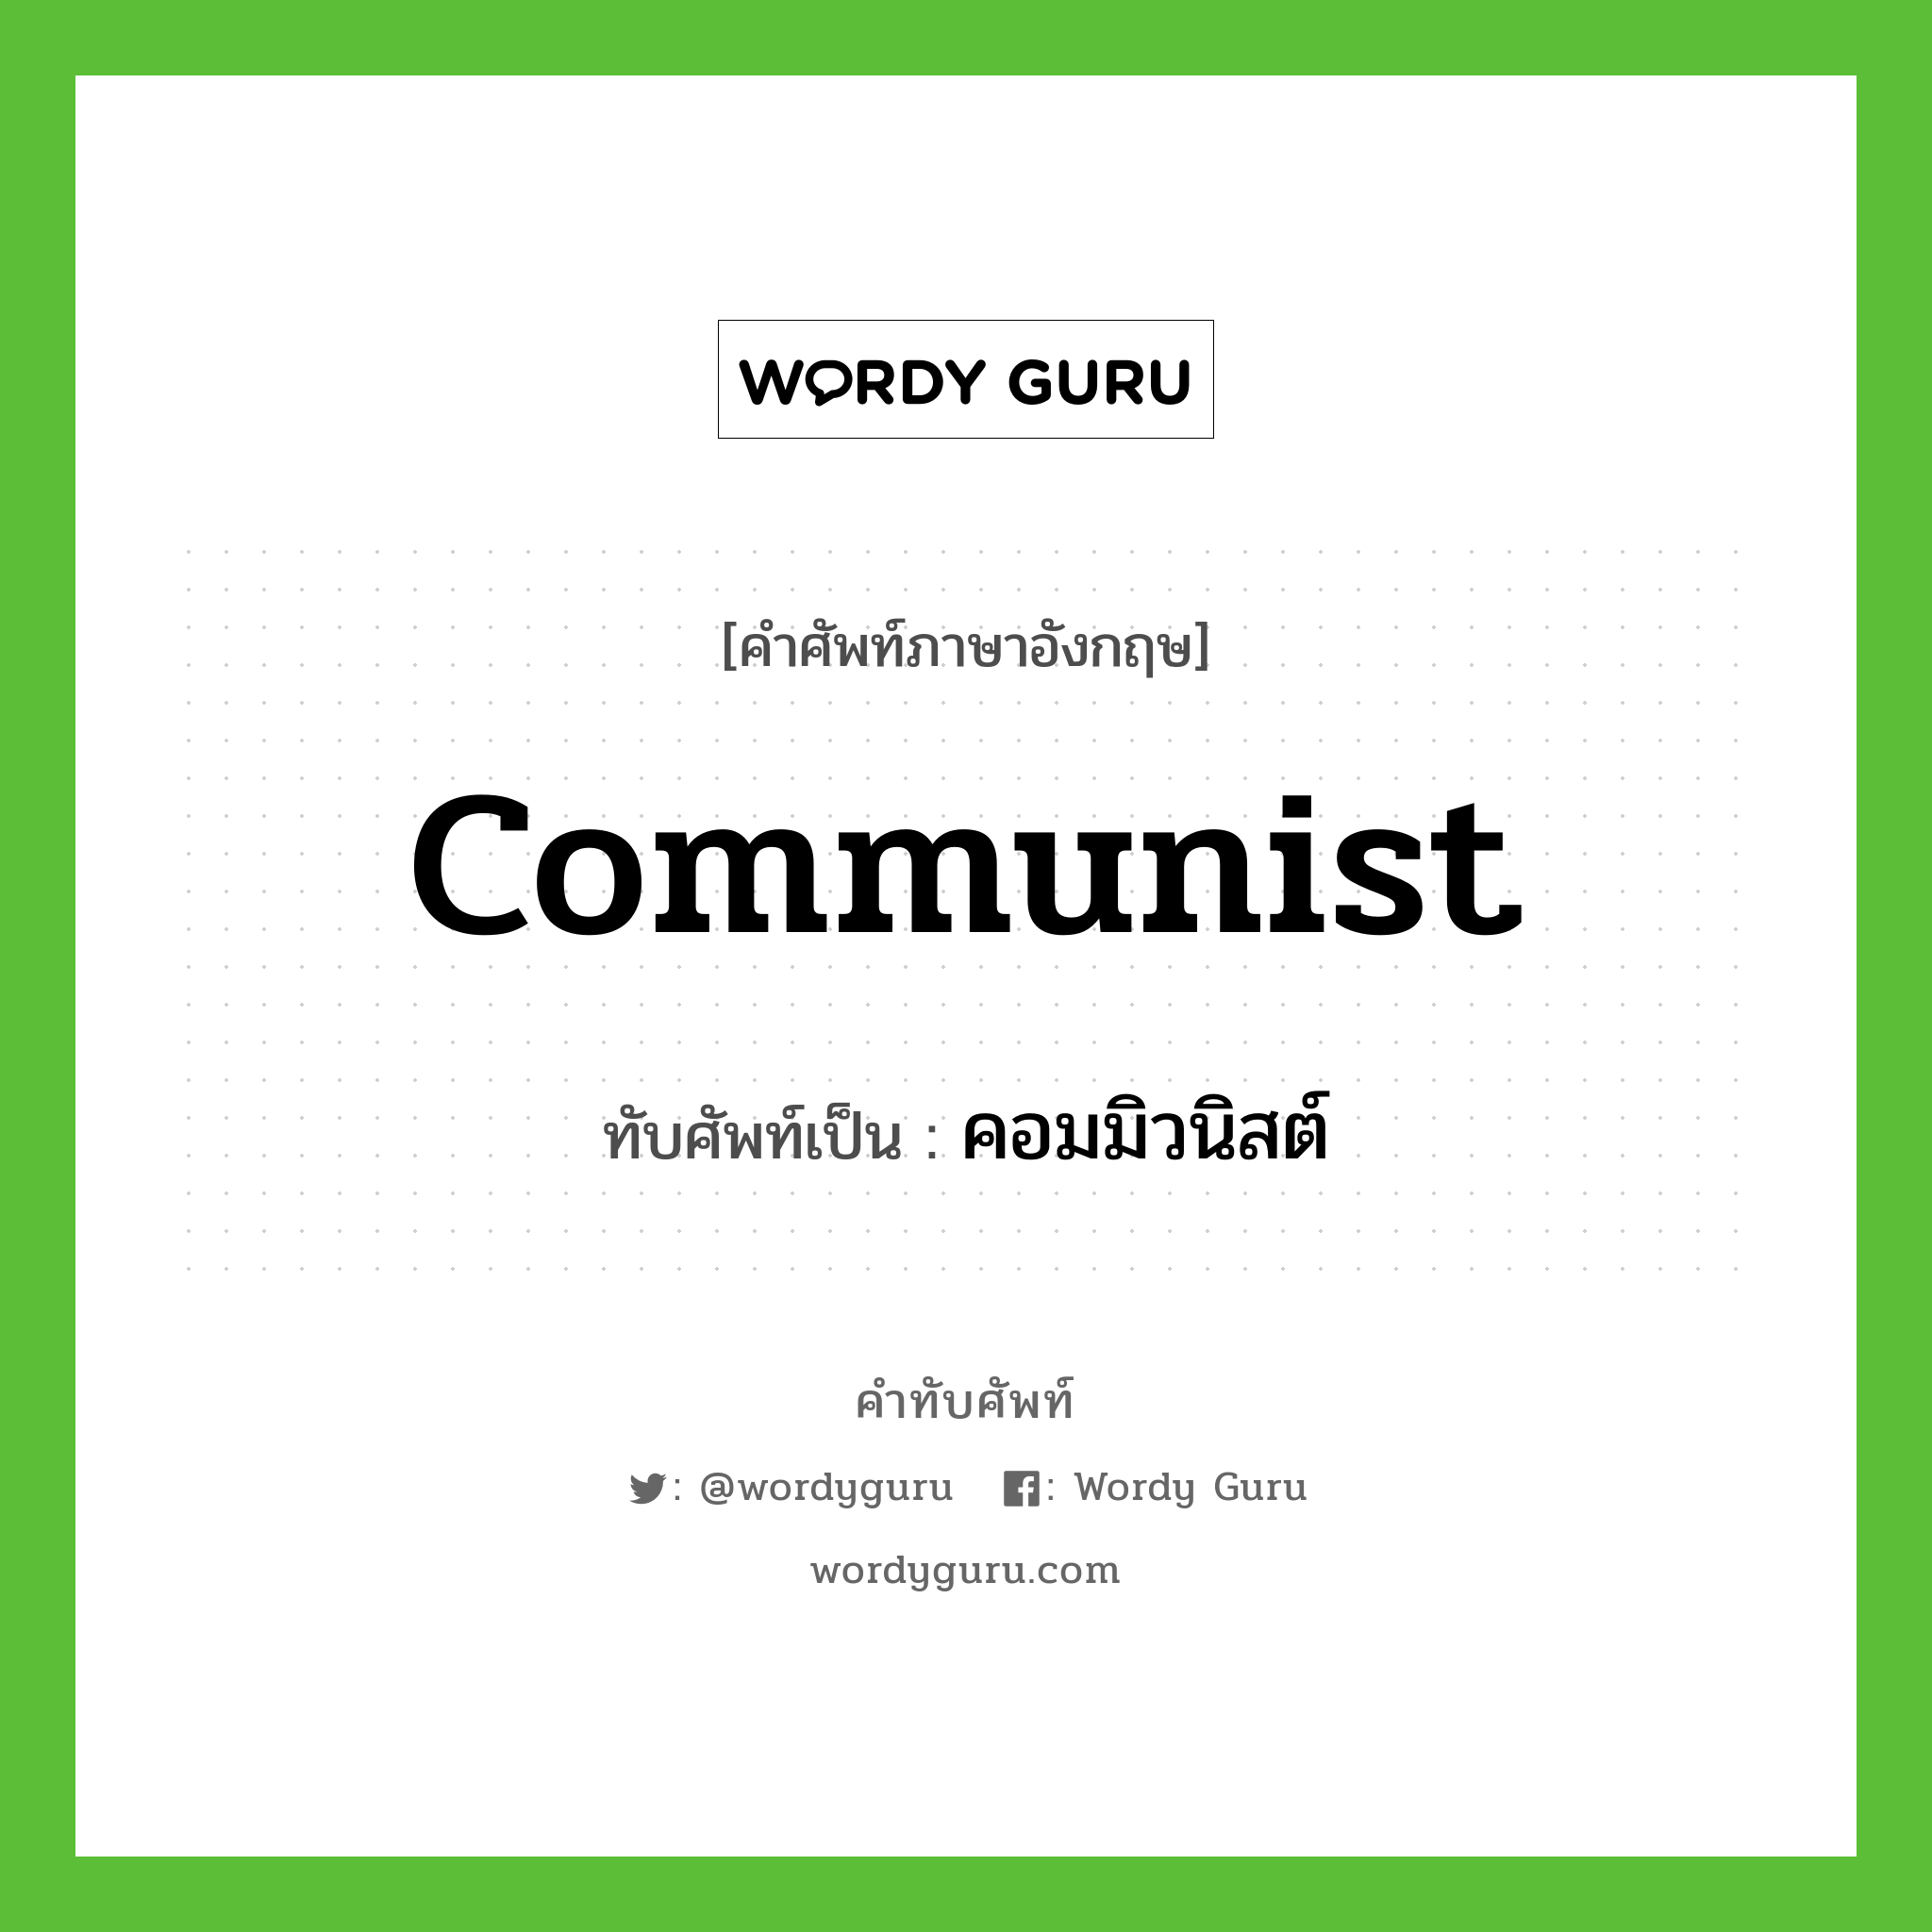 คอมมิวนิสต์ เขียนอย่างไร?, คำศัพท์ภาษาอังกฤษ คอมมิวนิสต์ ทับศัพท์เป็น communist